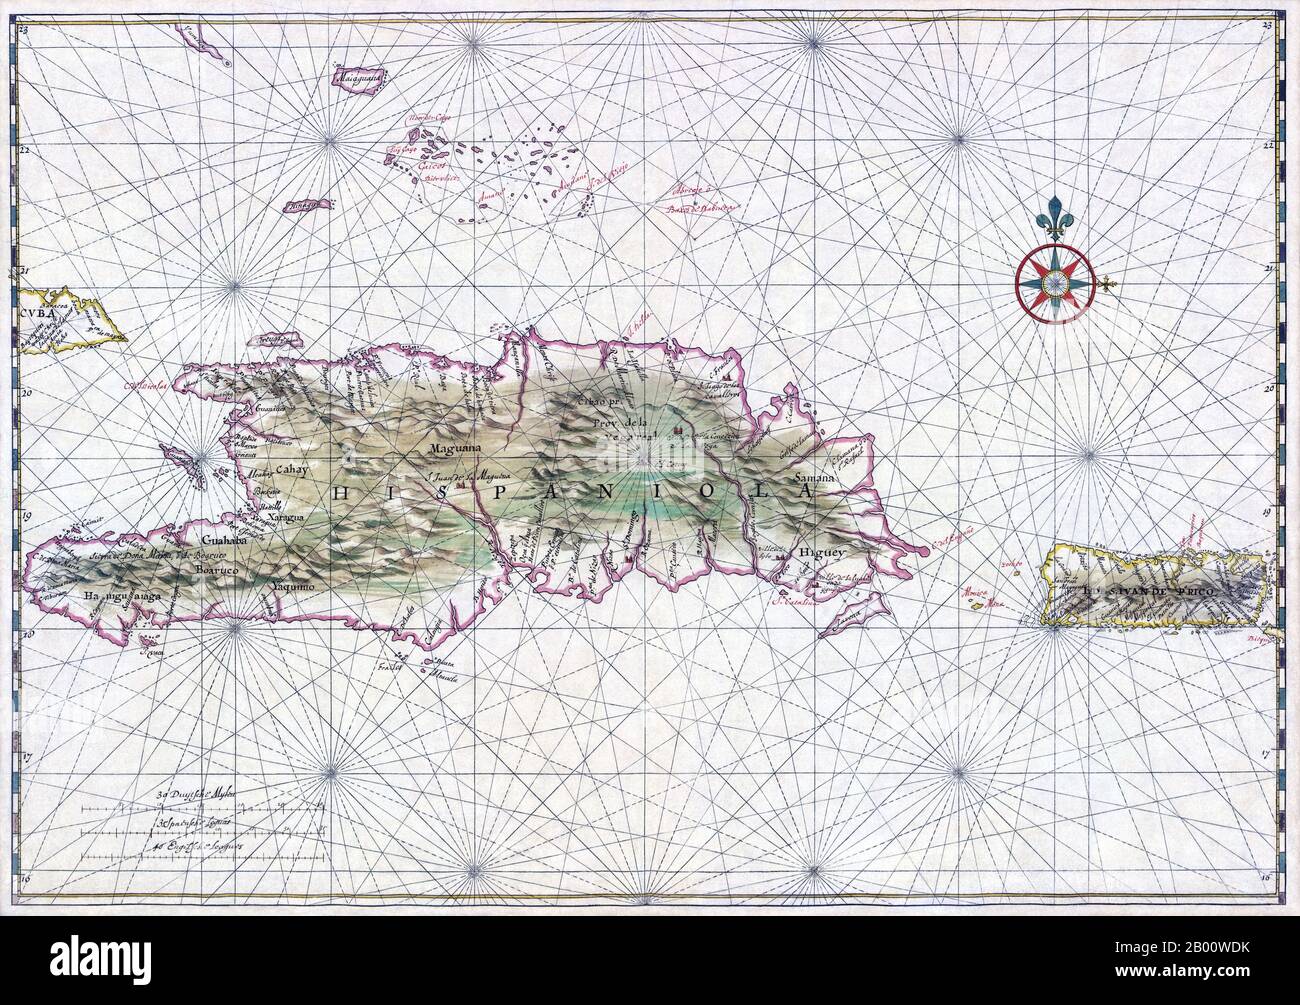 Hispaniola: Carte nautique d'Haïti, de la République dominicaine et de Porto Rico par Johannes Vingboons (1616-1670), 1639. Une carte nautique de 1639 d'Hispaniola (centre-gauche), l'île la plus peuplée des Amériques, et de Porto Rico (droite). Le nom donné à l'origine par Christophe Colomb, qui a fondé les premières colonies européennes du Nouveau monde ici au cours de ses deux premiers voyages, était la Isla Espanola (l'île espagnole), qui a été raccourcie à Espanola puis Latinisée à Hispaniola. Banque D'Images